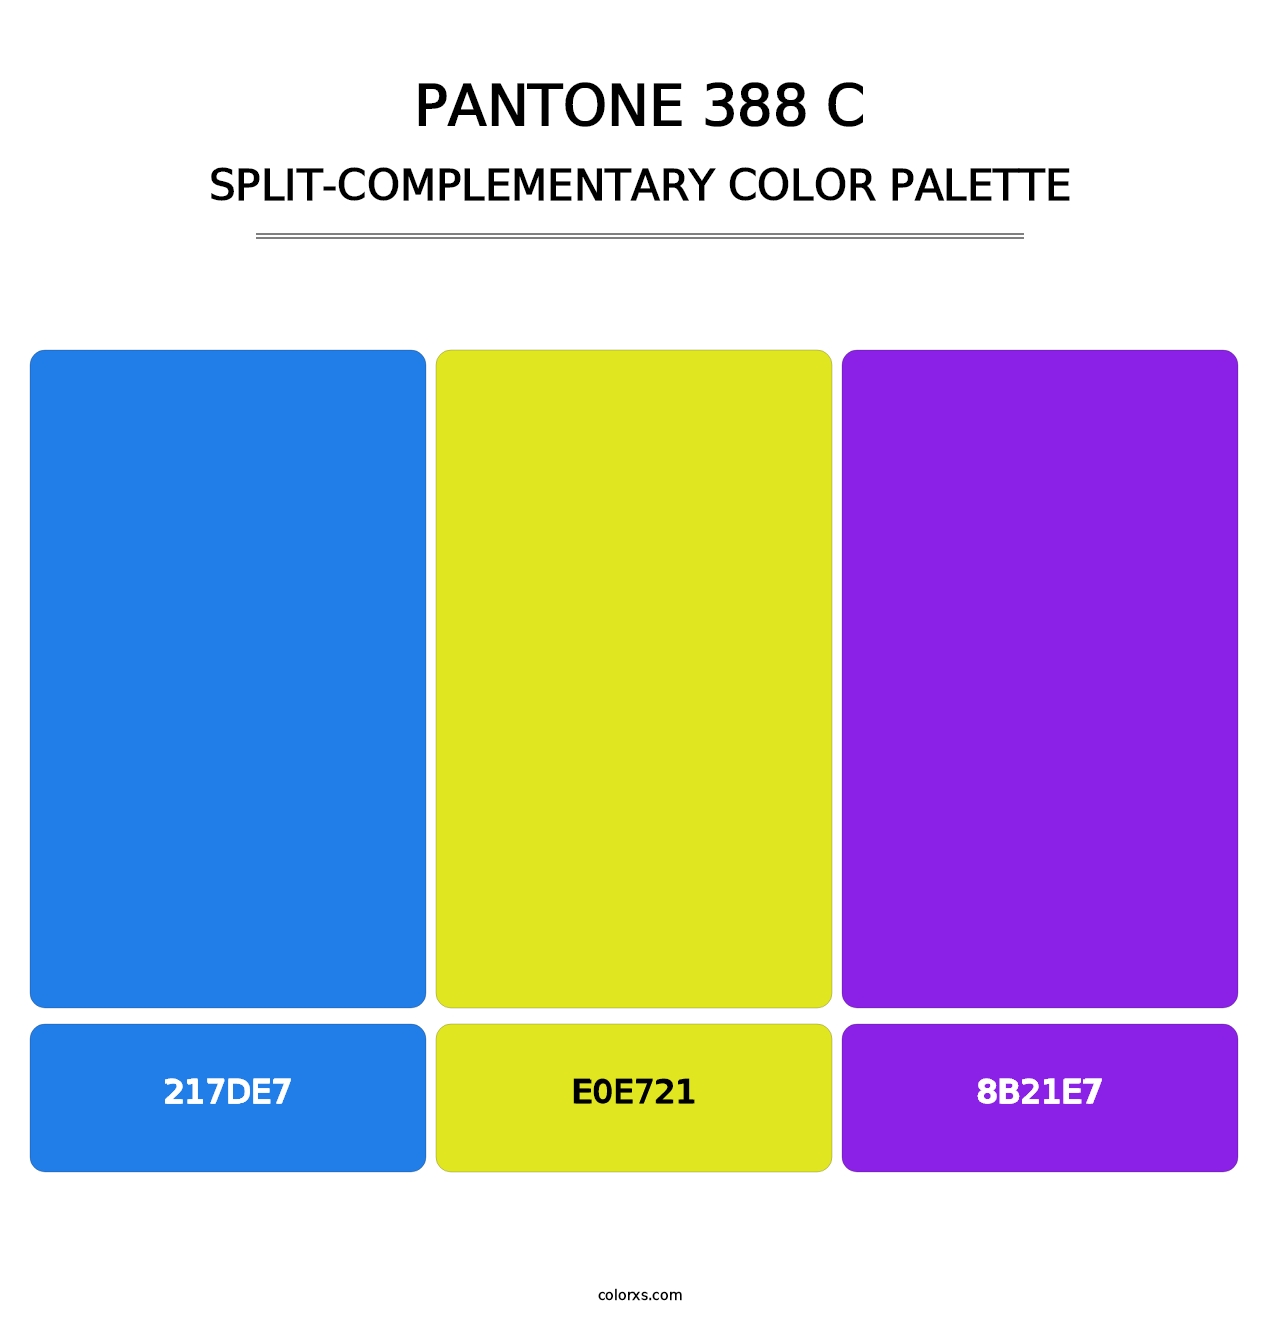 PANTONE 388 C - Split-Complementary Color Palette